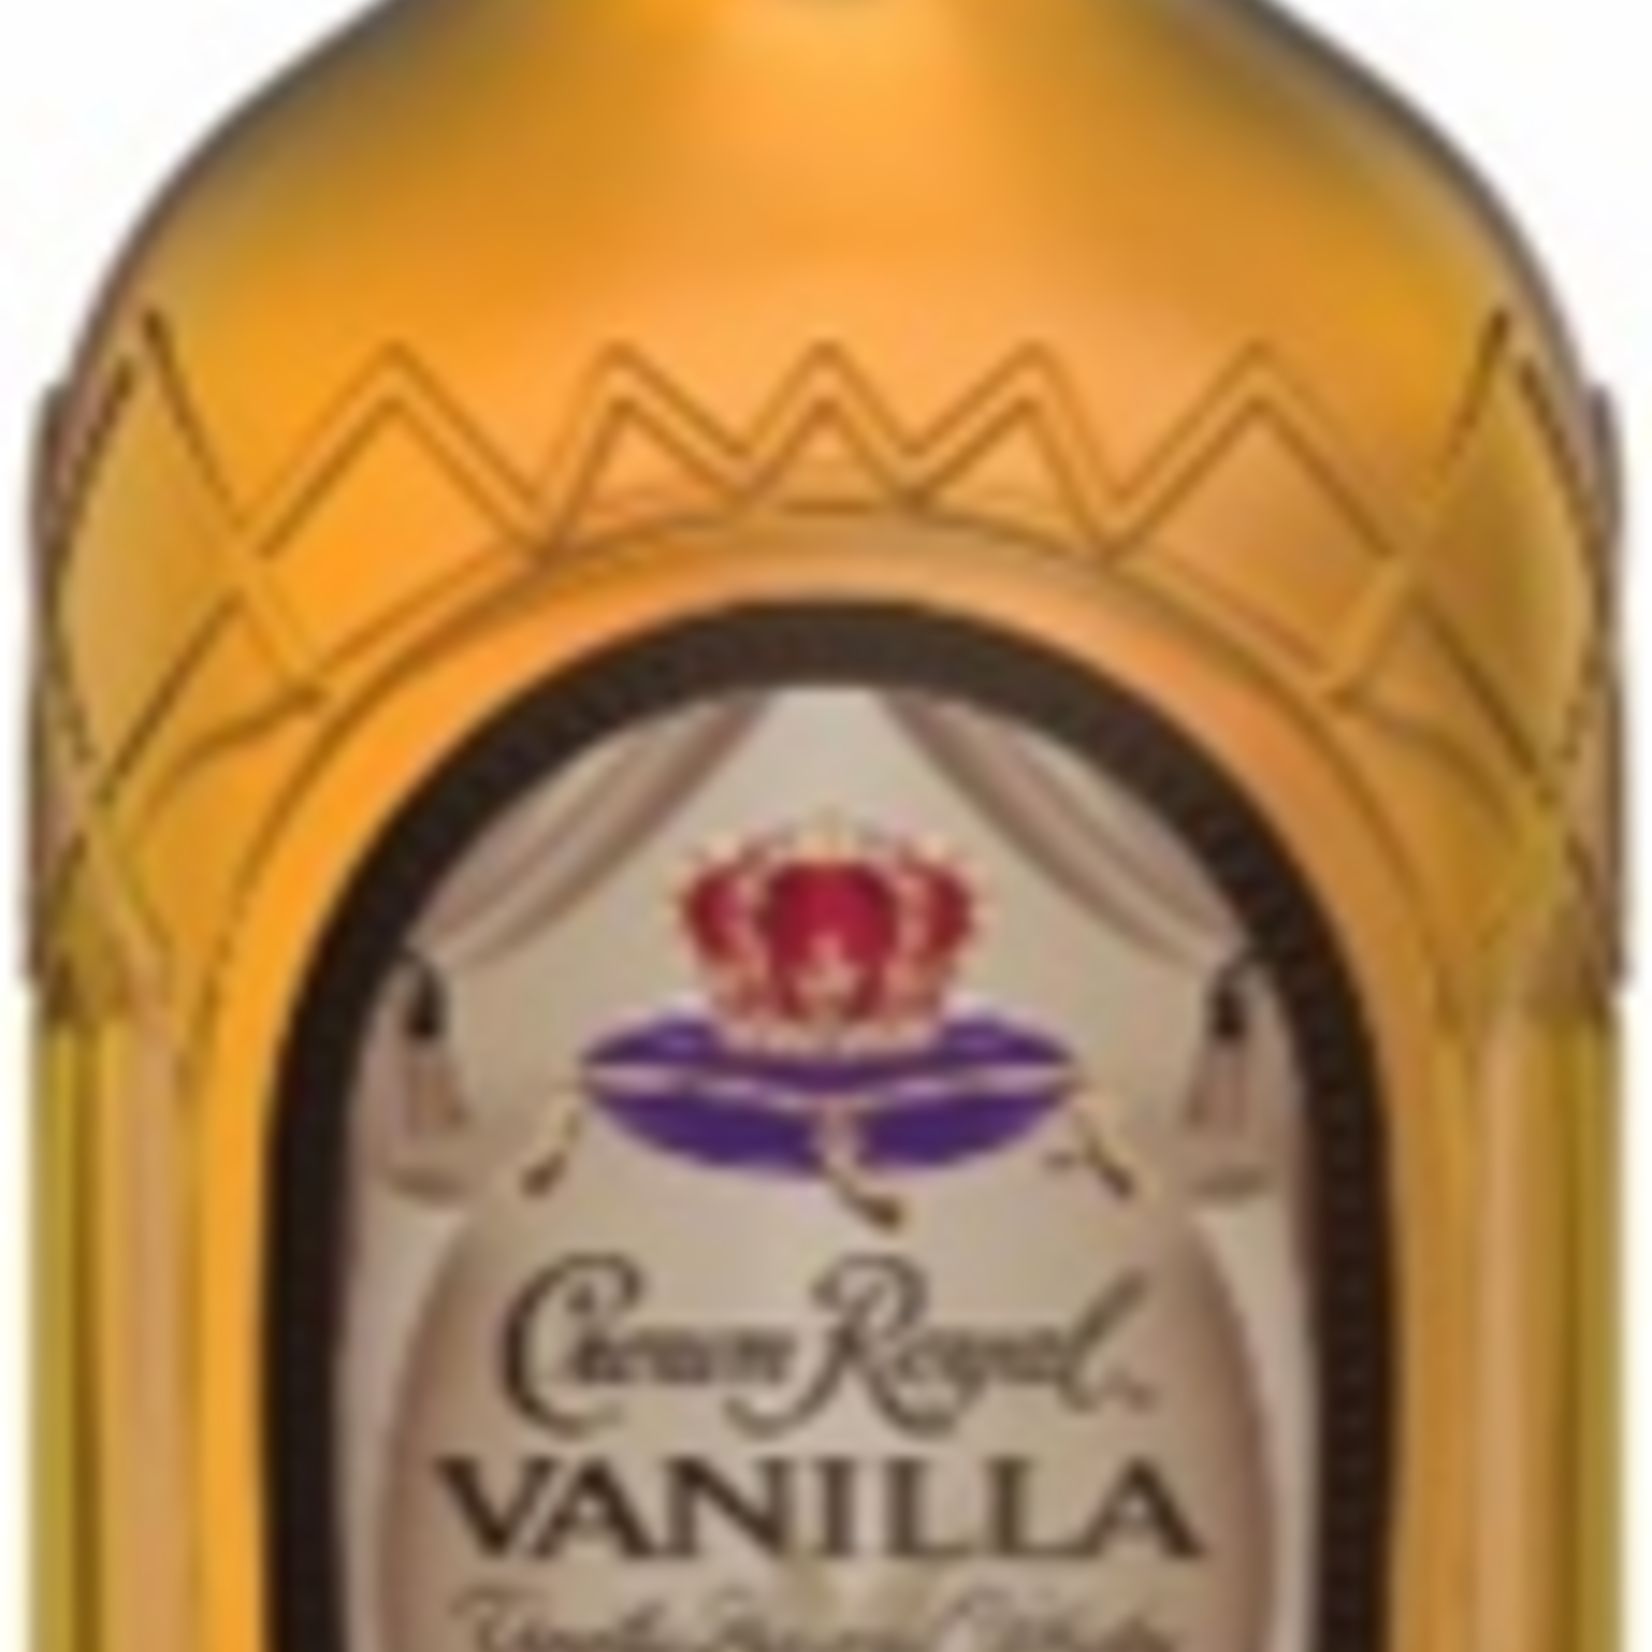 Crown Royal Crown Royal Vanilla